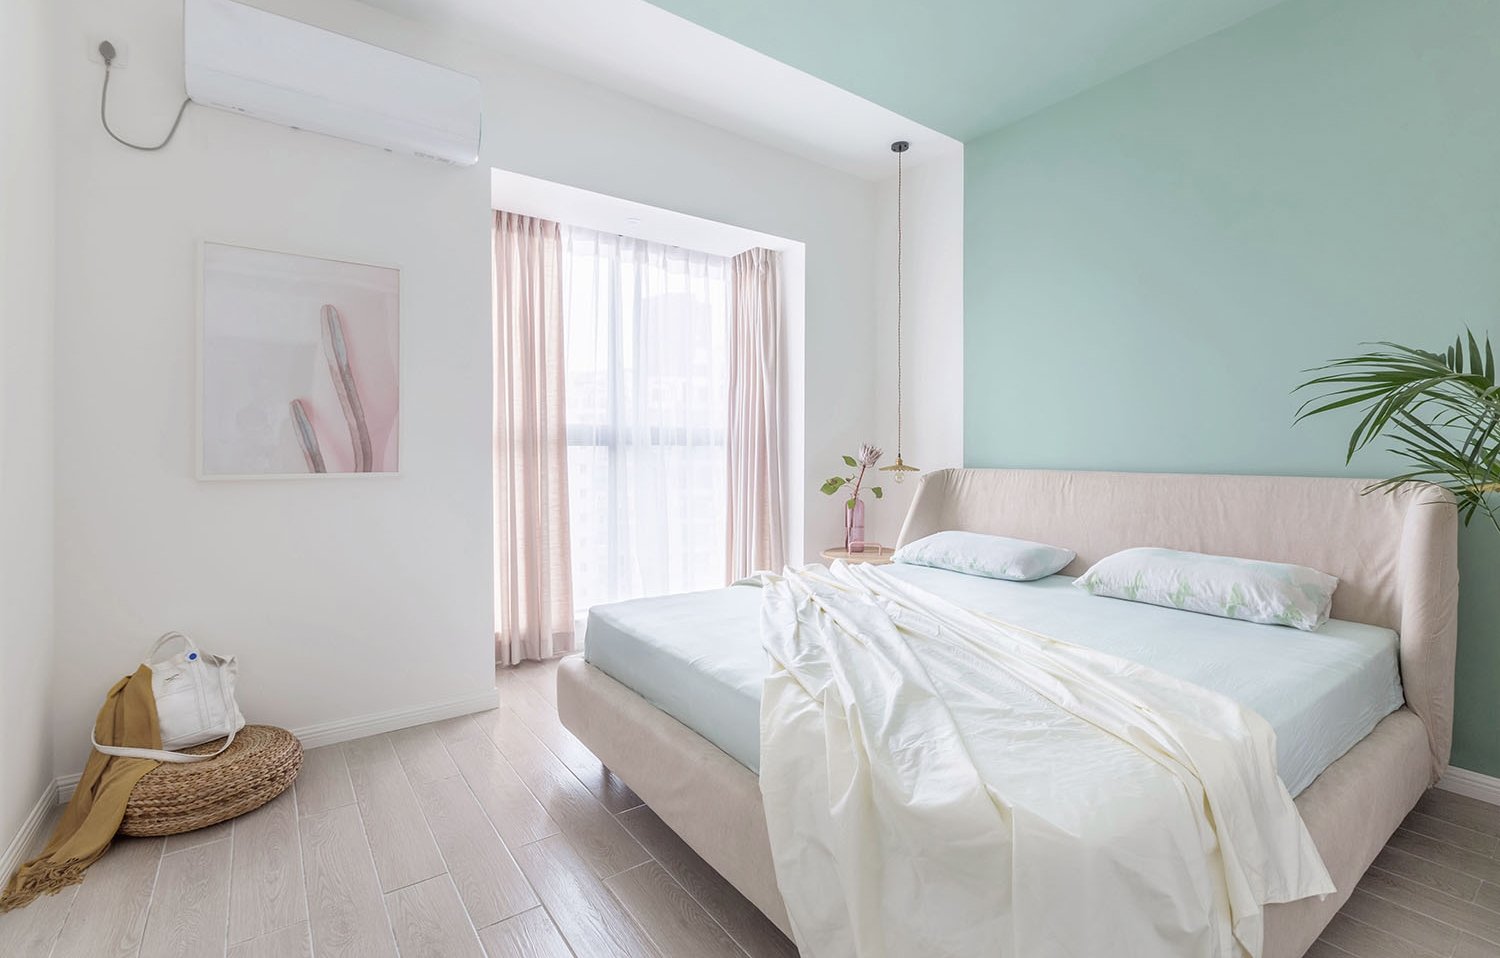 公寓装修,90平米装修,北欧风格,10-15万装修,卧室背景墙,白色,绿色